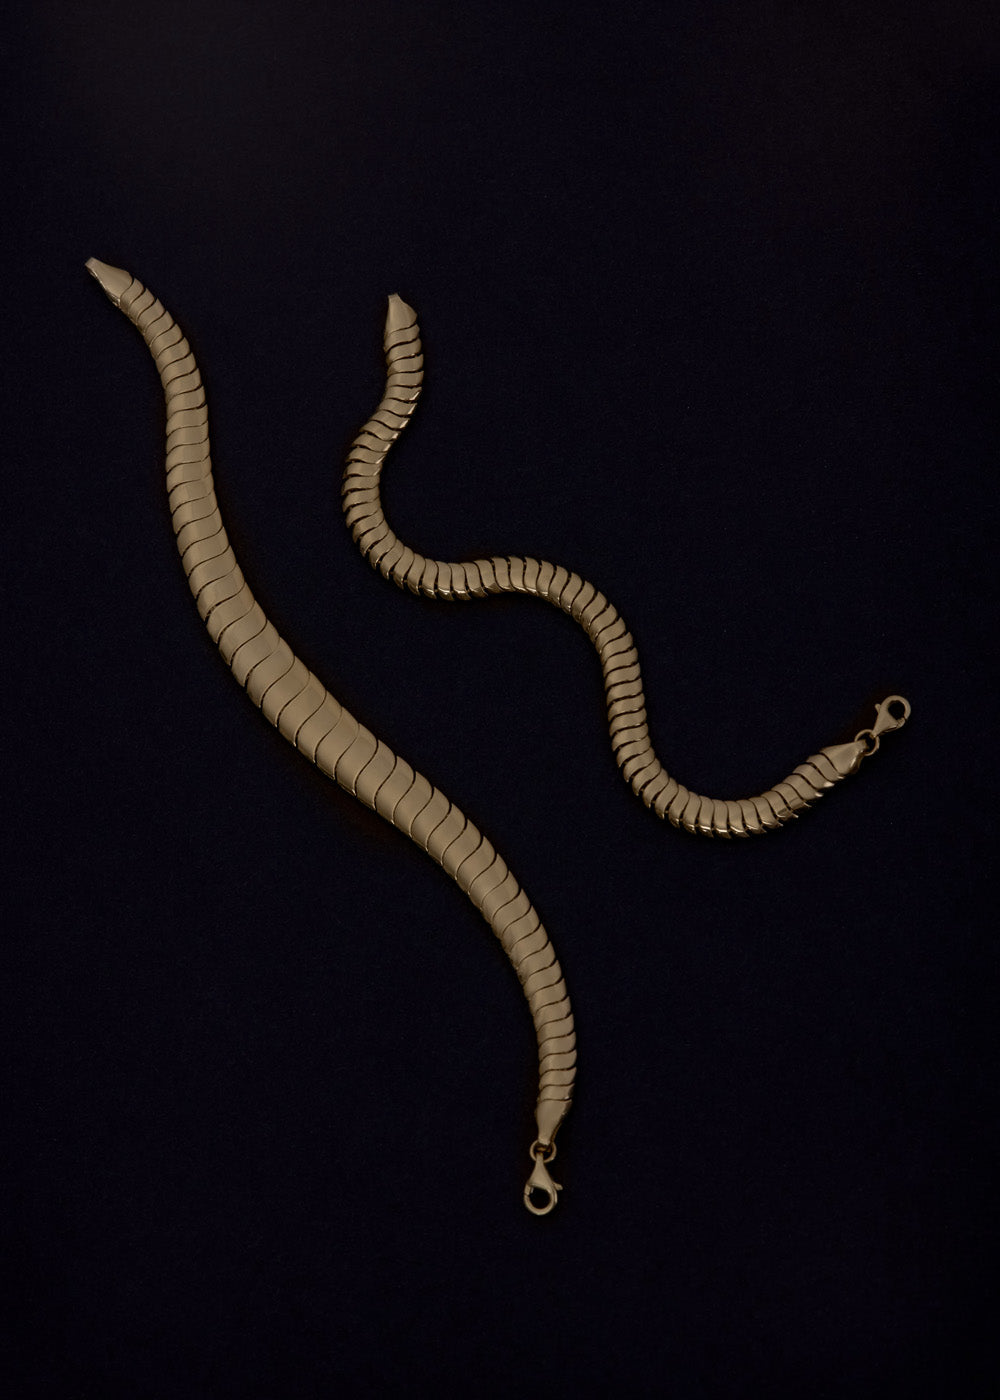 alt="Cobra Chain Bracelet I with Cobra Chain Bracelet II"